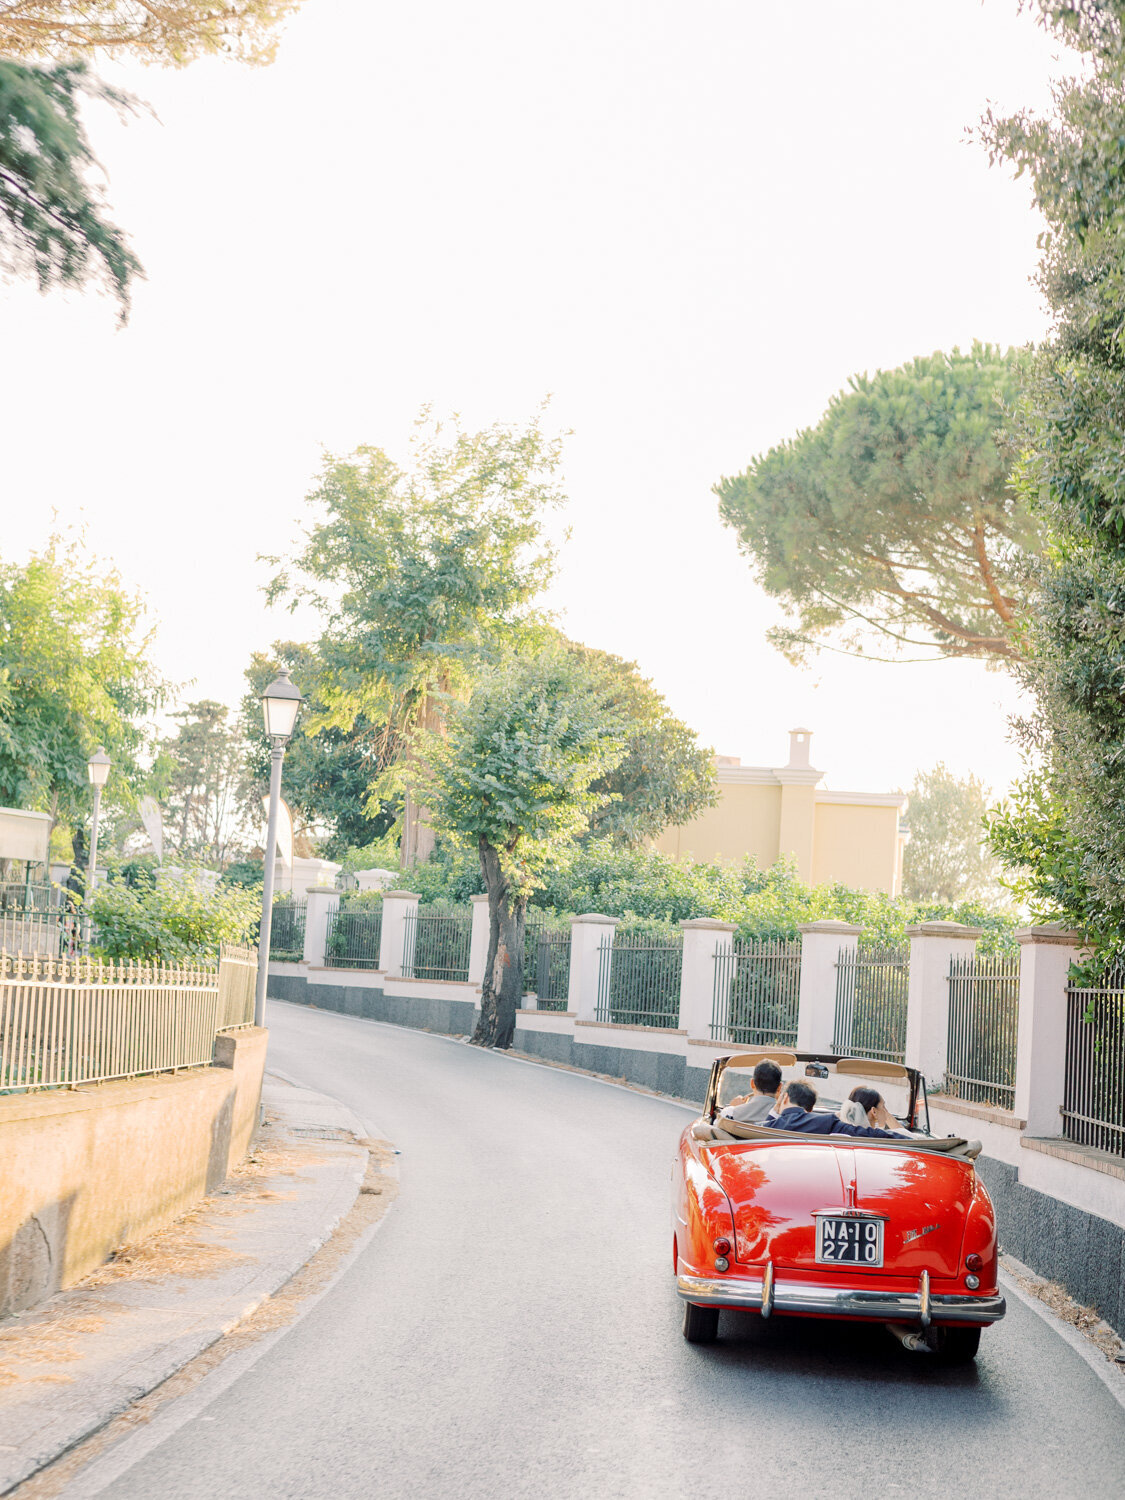 Vintage red car in Capri